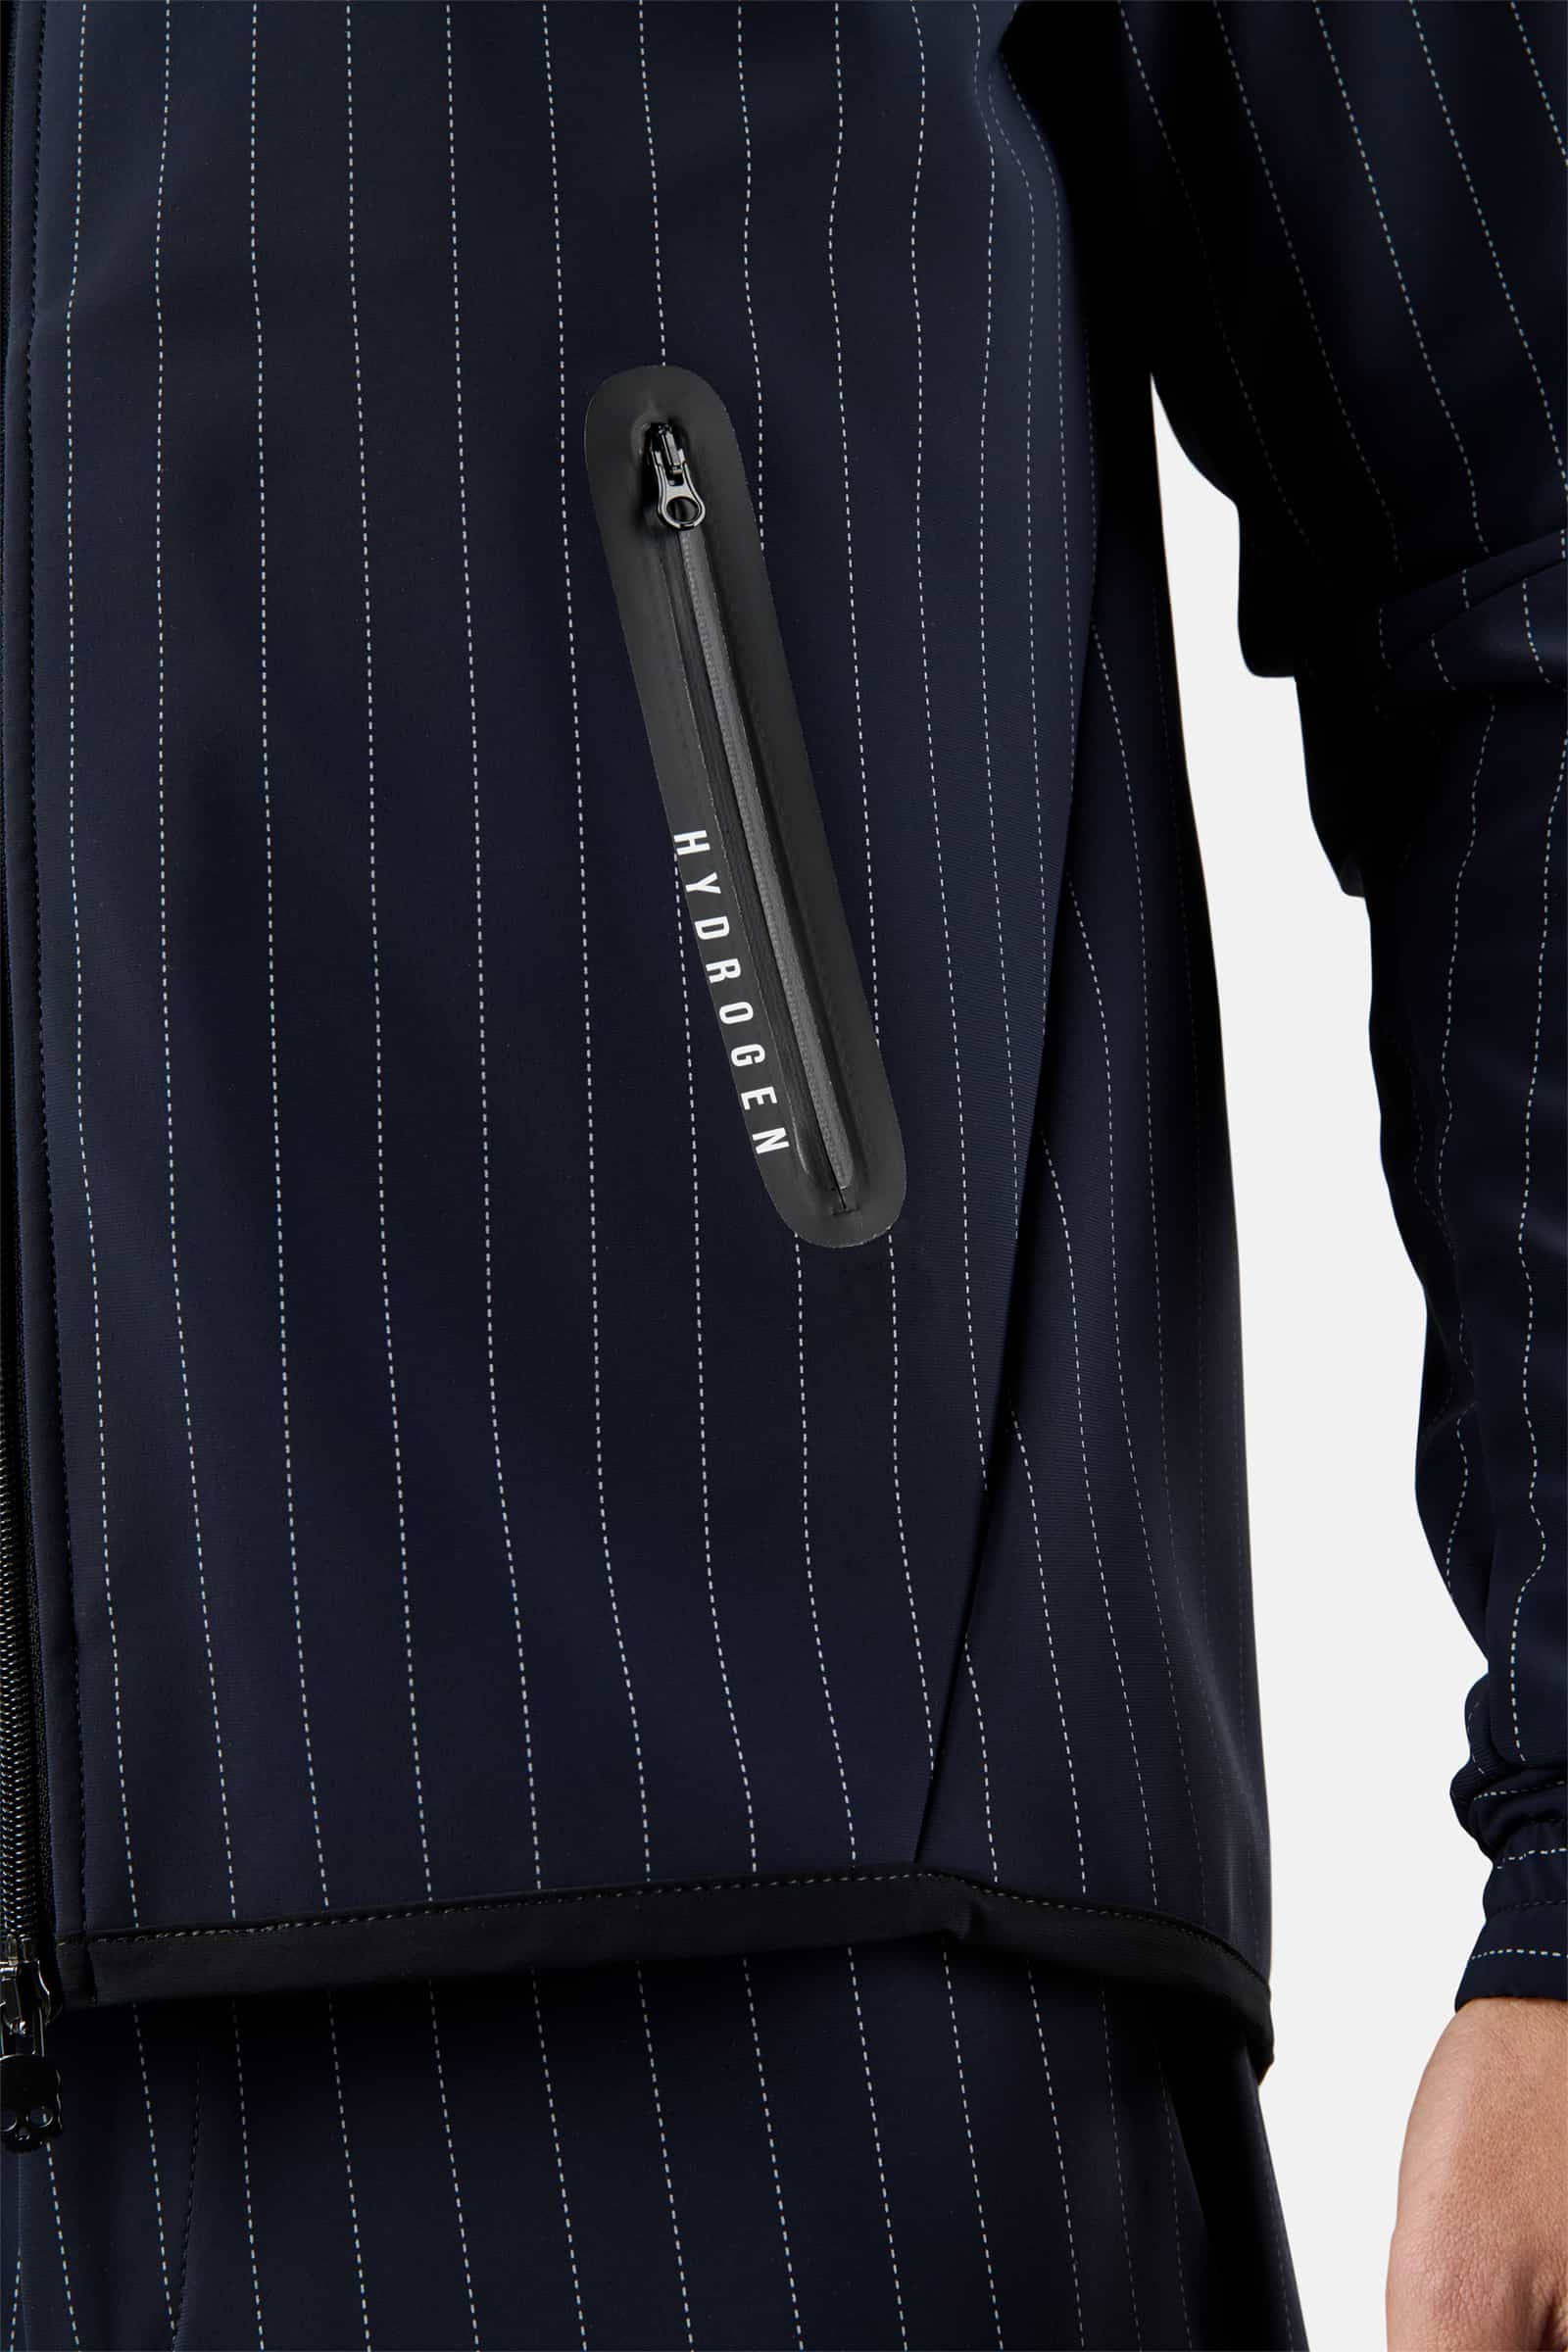 WINTER GOLF JKT - Outlet Hydrogen - Luxury Sportwear